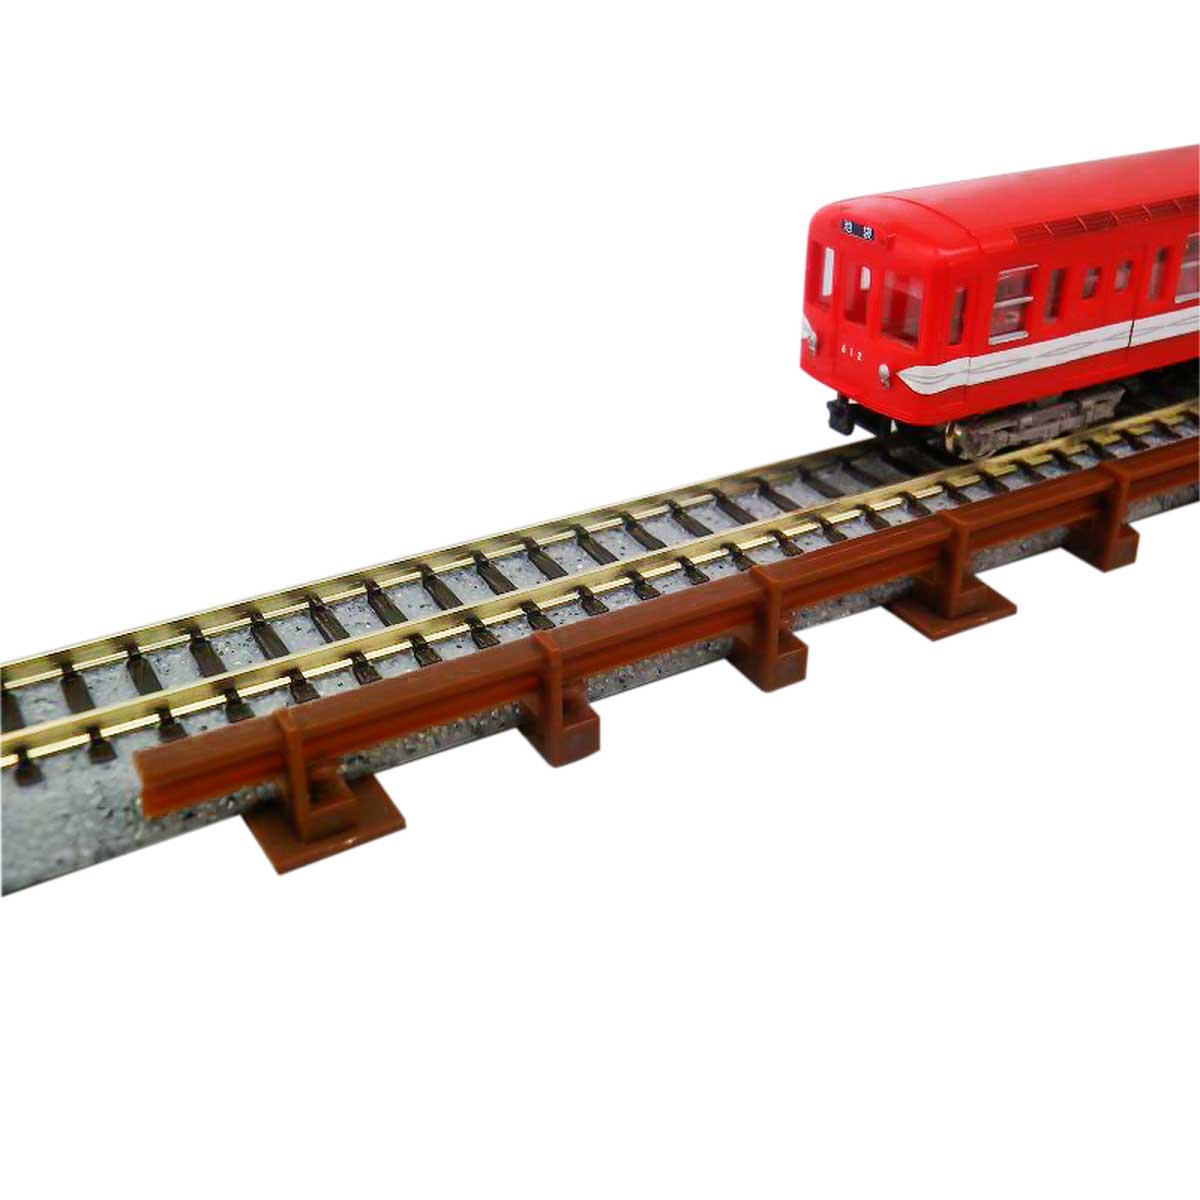 21 第3軌条 サードレール ブラウン 6本入り ストラクチャーキット Nゲージ鉄道模型のグリーンマックス